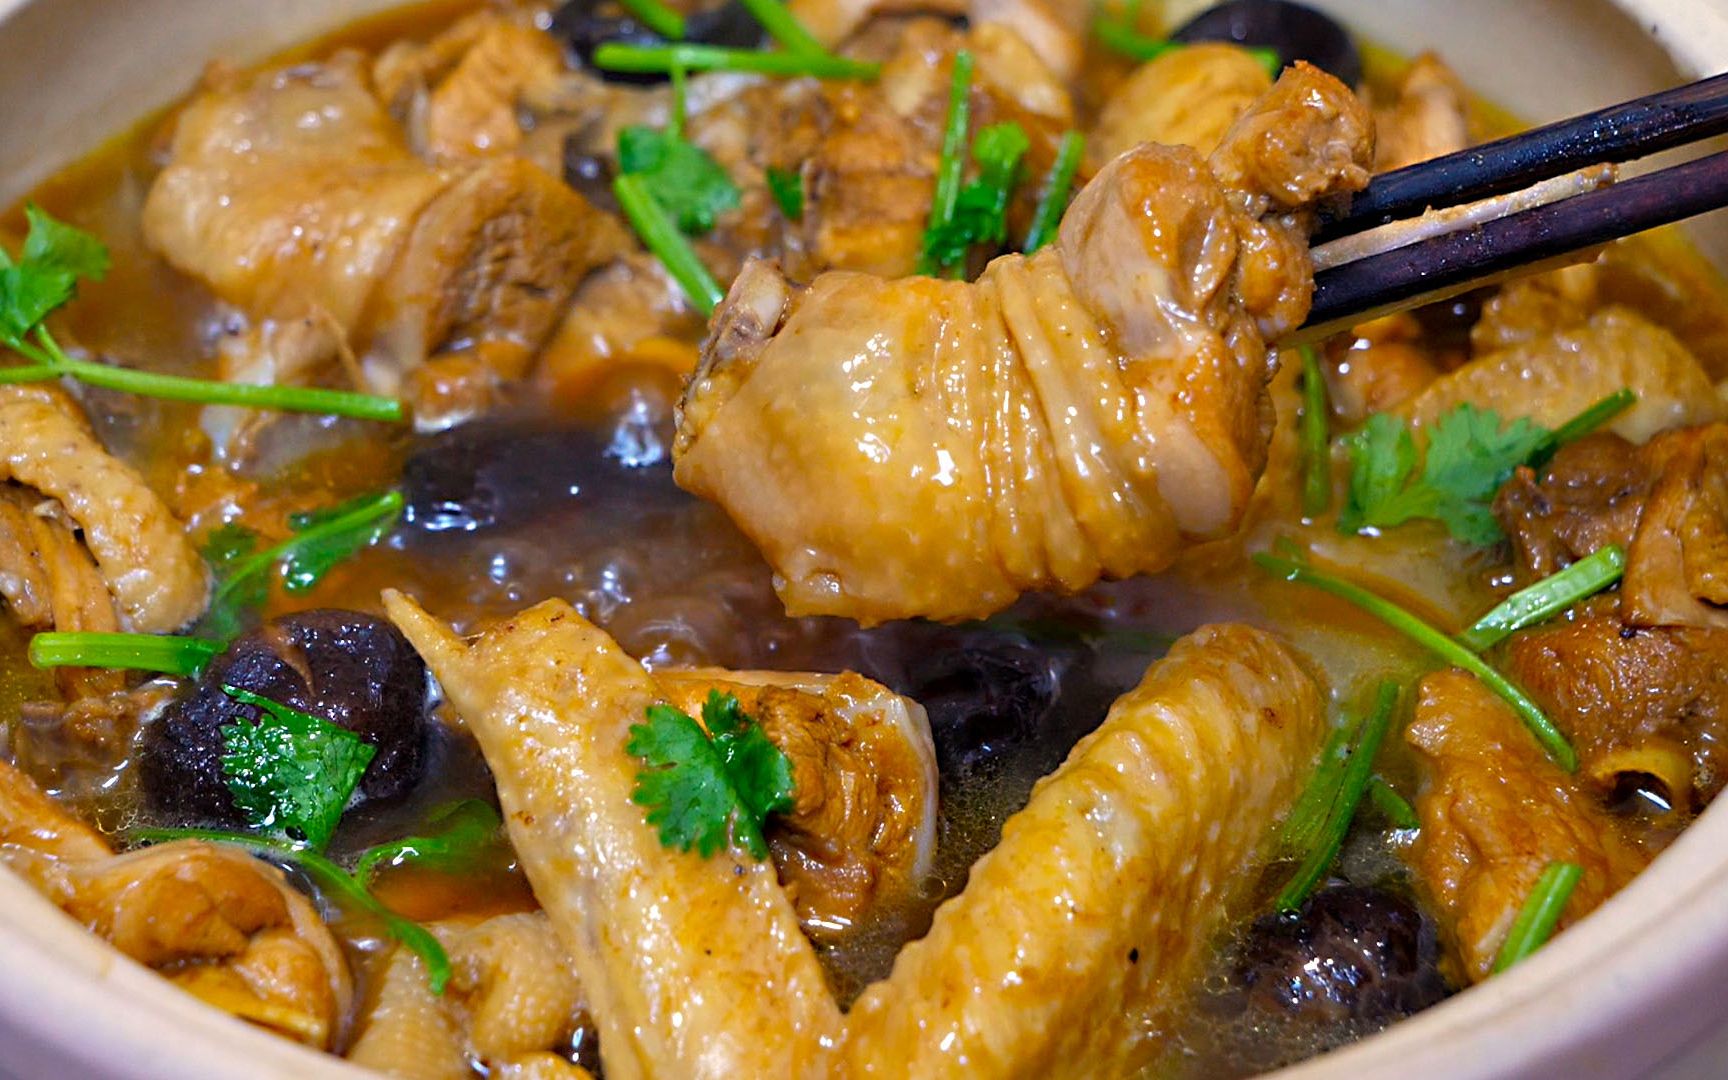 砂锅炖鸡肉的做法_【图解】砂锅炖鸡肉怎么做如何做好吃_砂锅炖鸡肉家常做法大全_幸福的吃货666_豆果美食